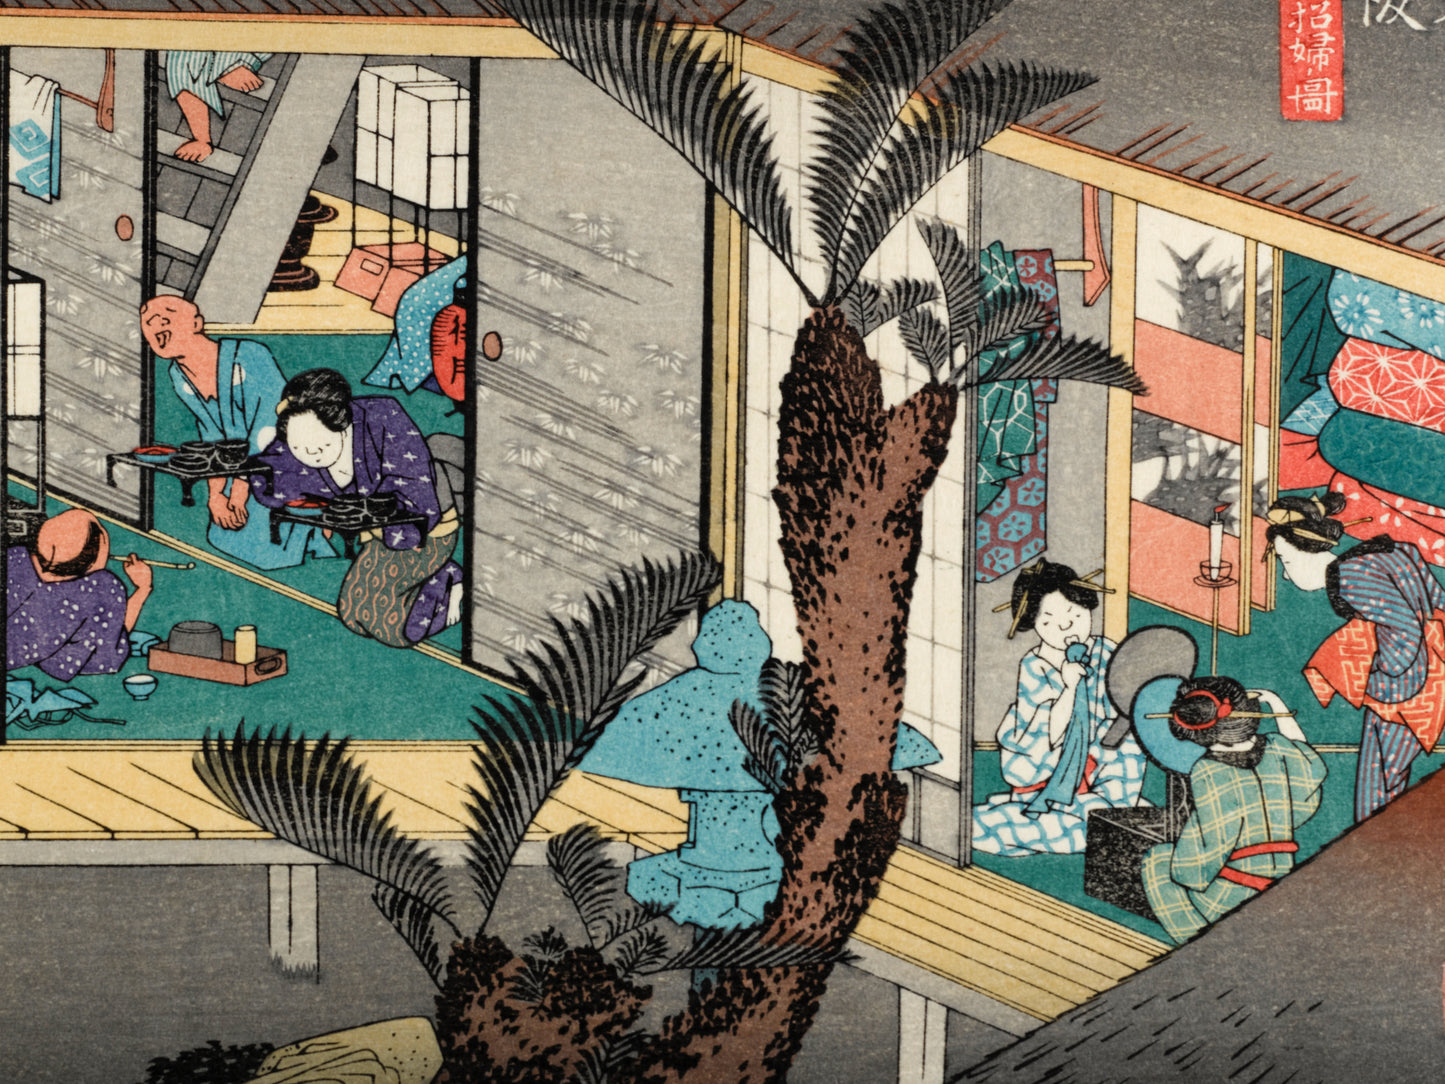 estampe japonaise intérieur d'une auberge avec voyageurs et geishas, palmier et lanterne central